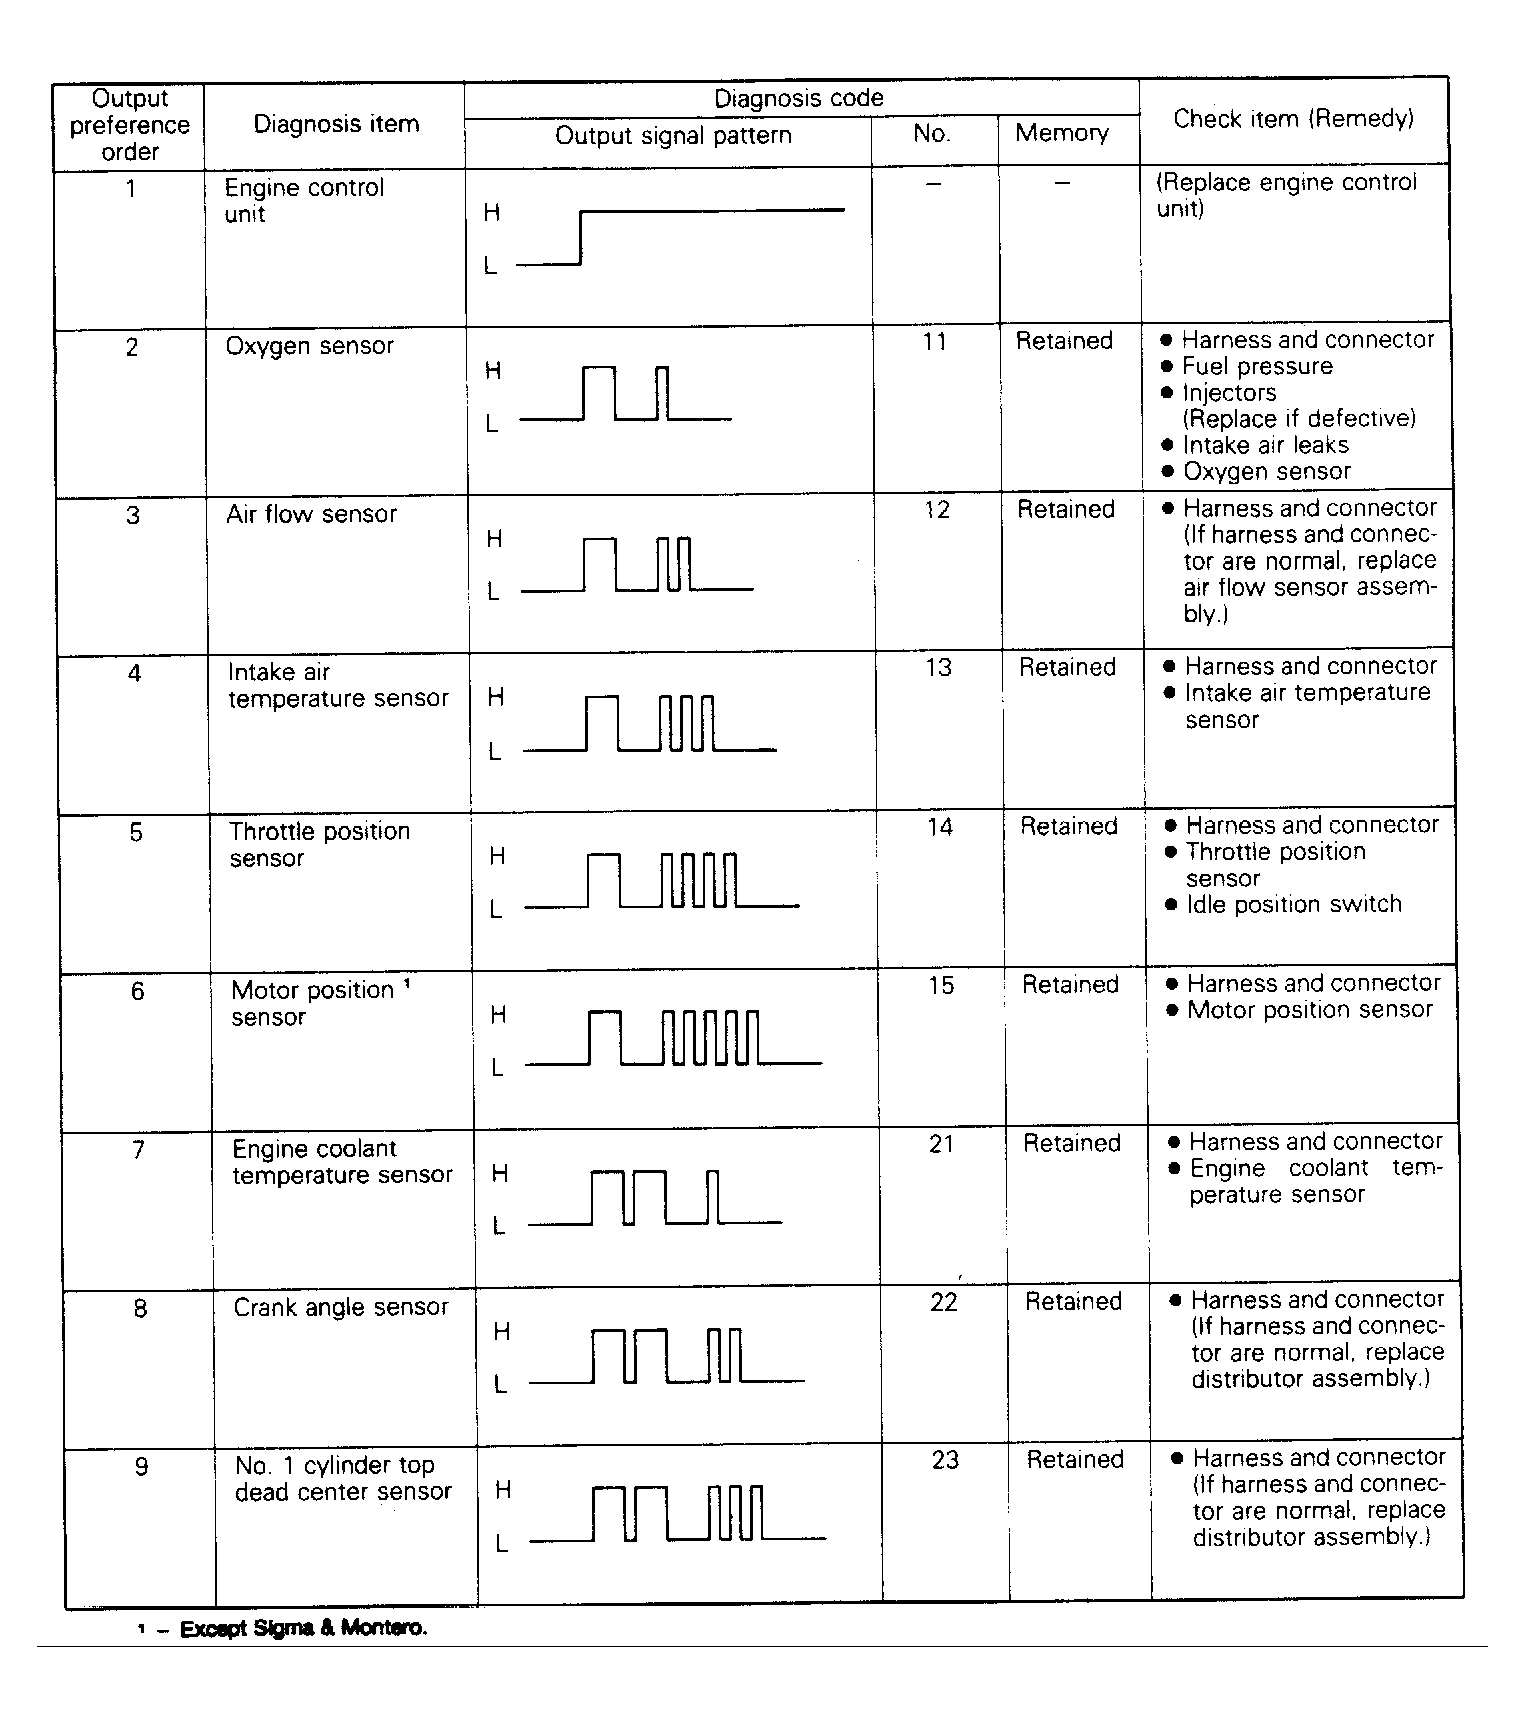 Dodge Colt Vista 1991 - Component Locations -  Diagnostic Fault Chart (1 of 2)